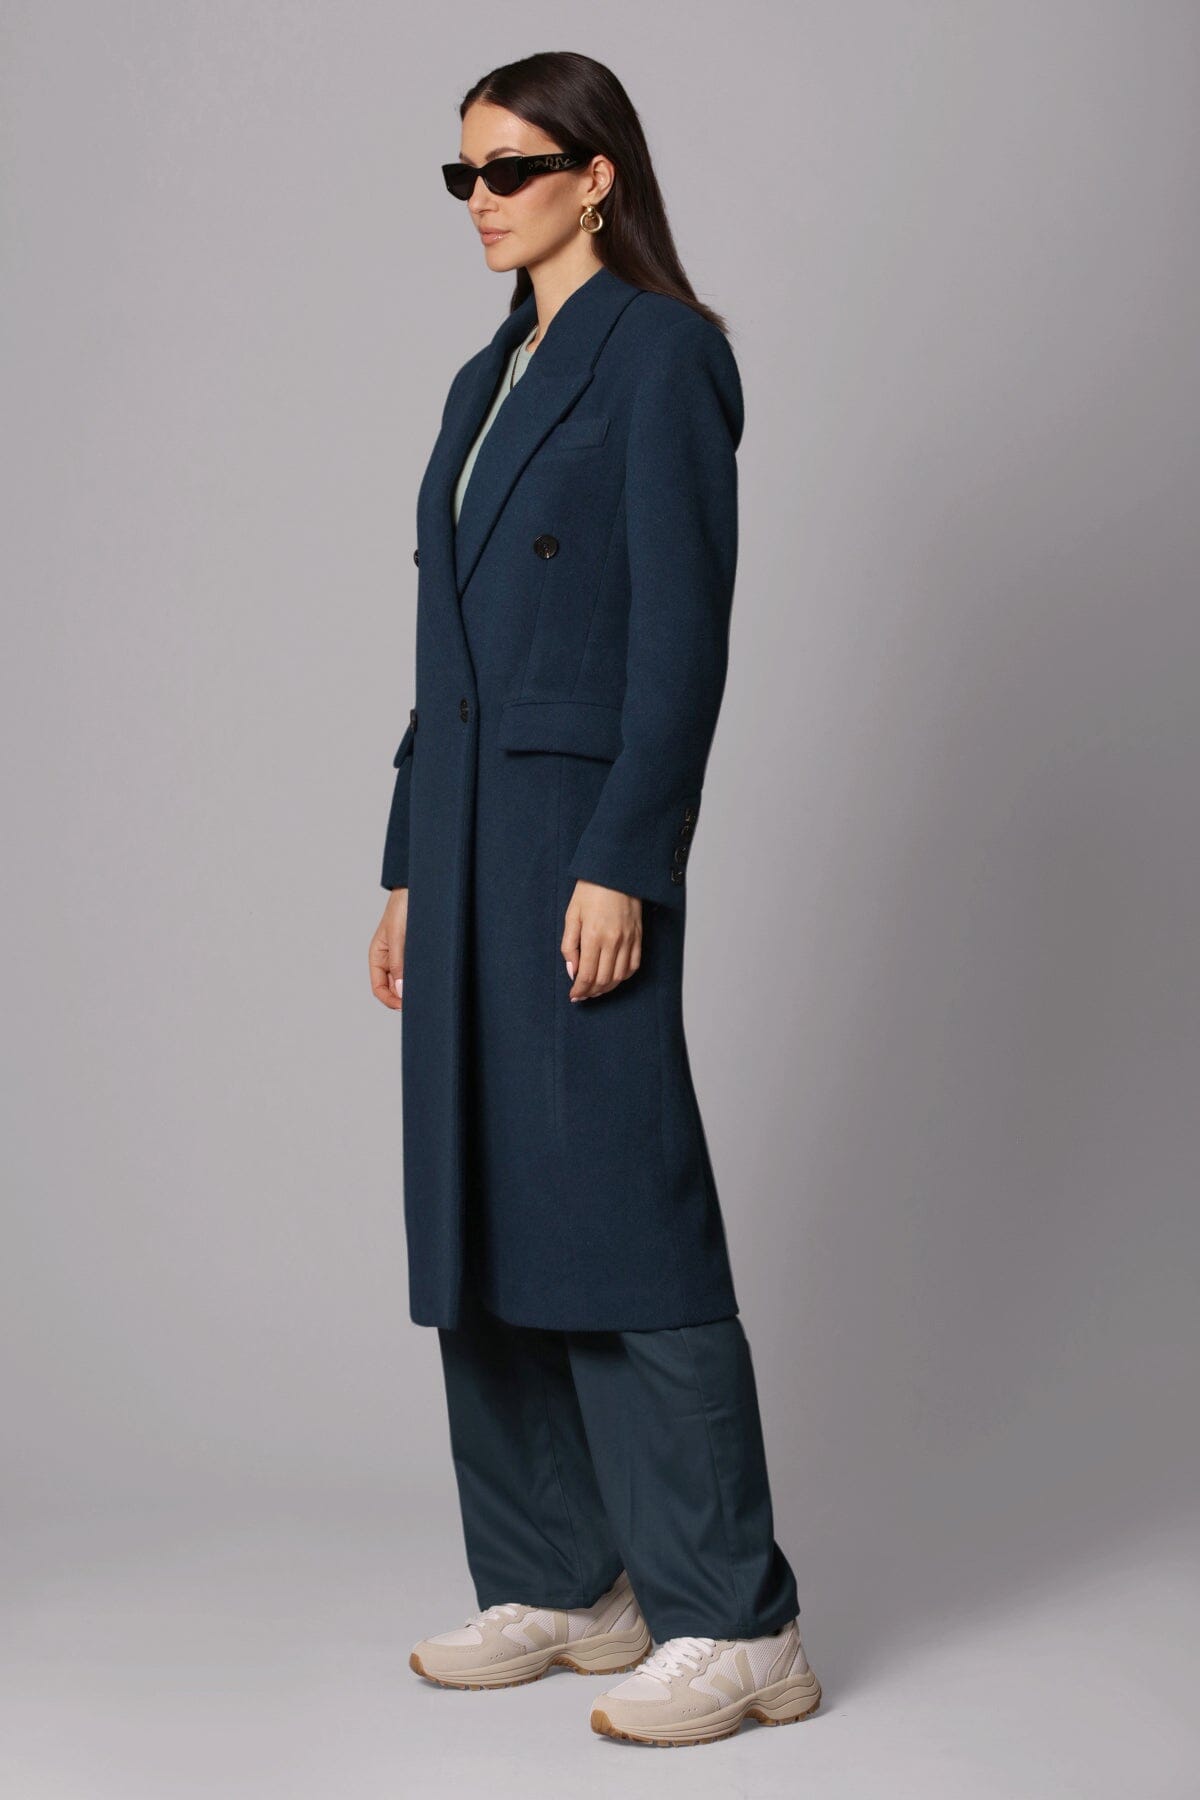 Deep teal wool blend double breasted tailored coat jacket - women's figure flattering streetwear style long coats jackets 